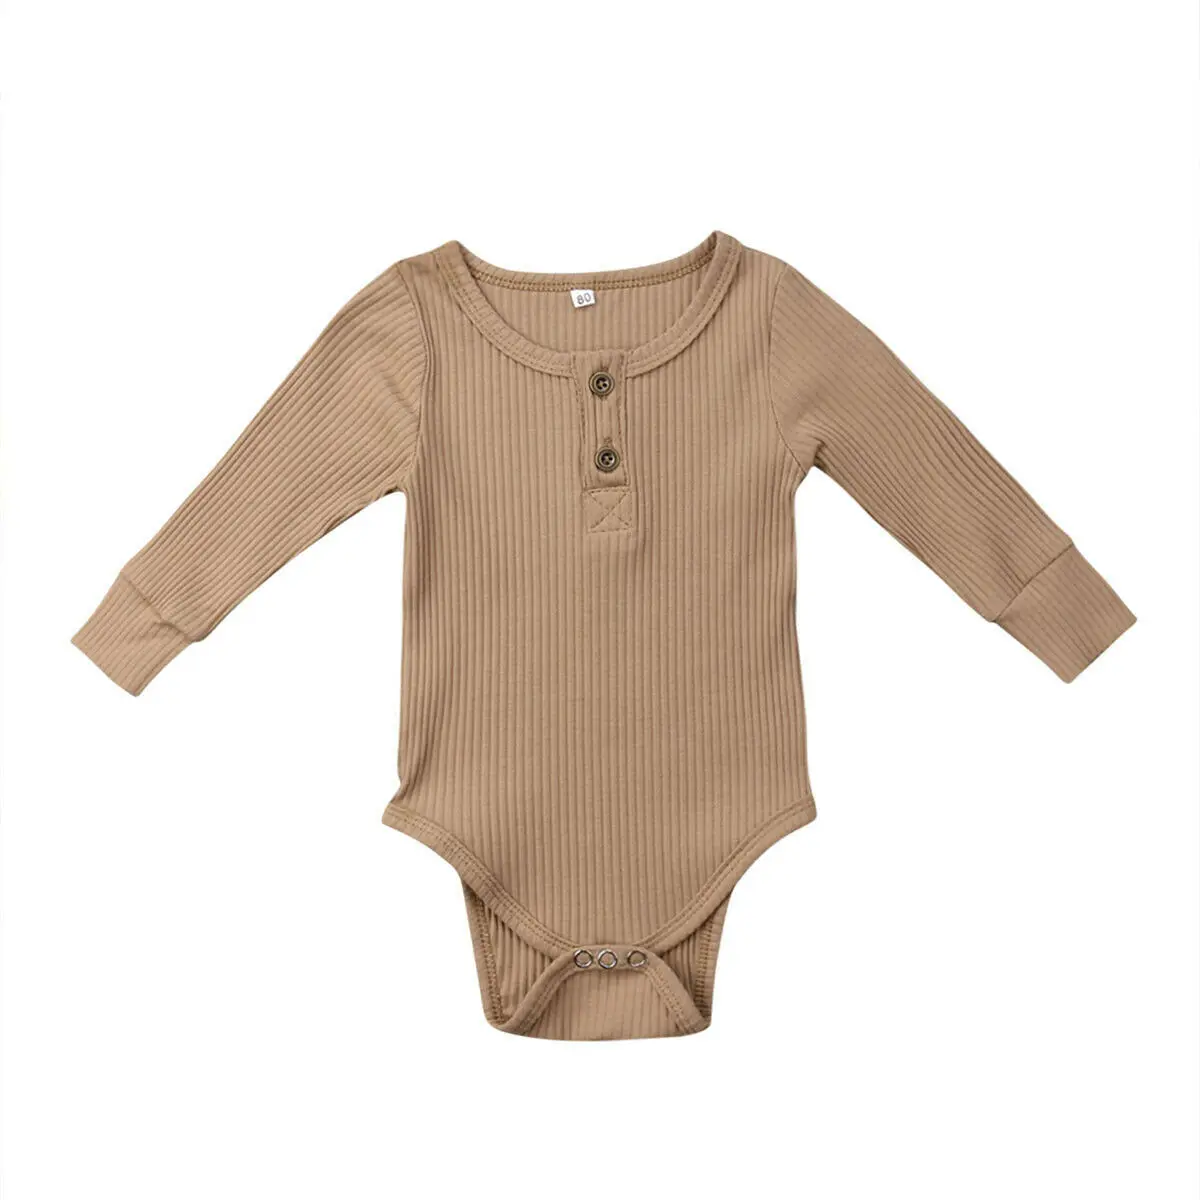 Одежда для новорожденных девочек и мальчиков, одежда для новорожденных боди, хлопковый комбинезон унисекс с длинными рукавами, цельнокроеный костюм в рубчик для альпинизма на возраст от 0 до 24 месяцев - Цвет: Хаки